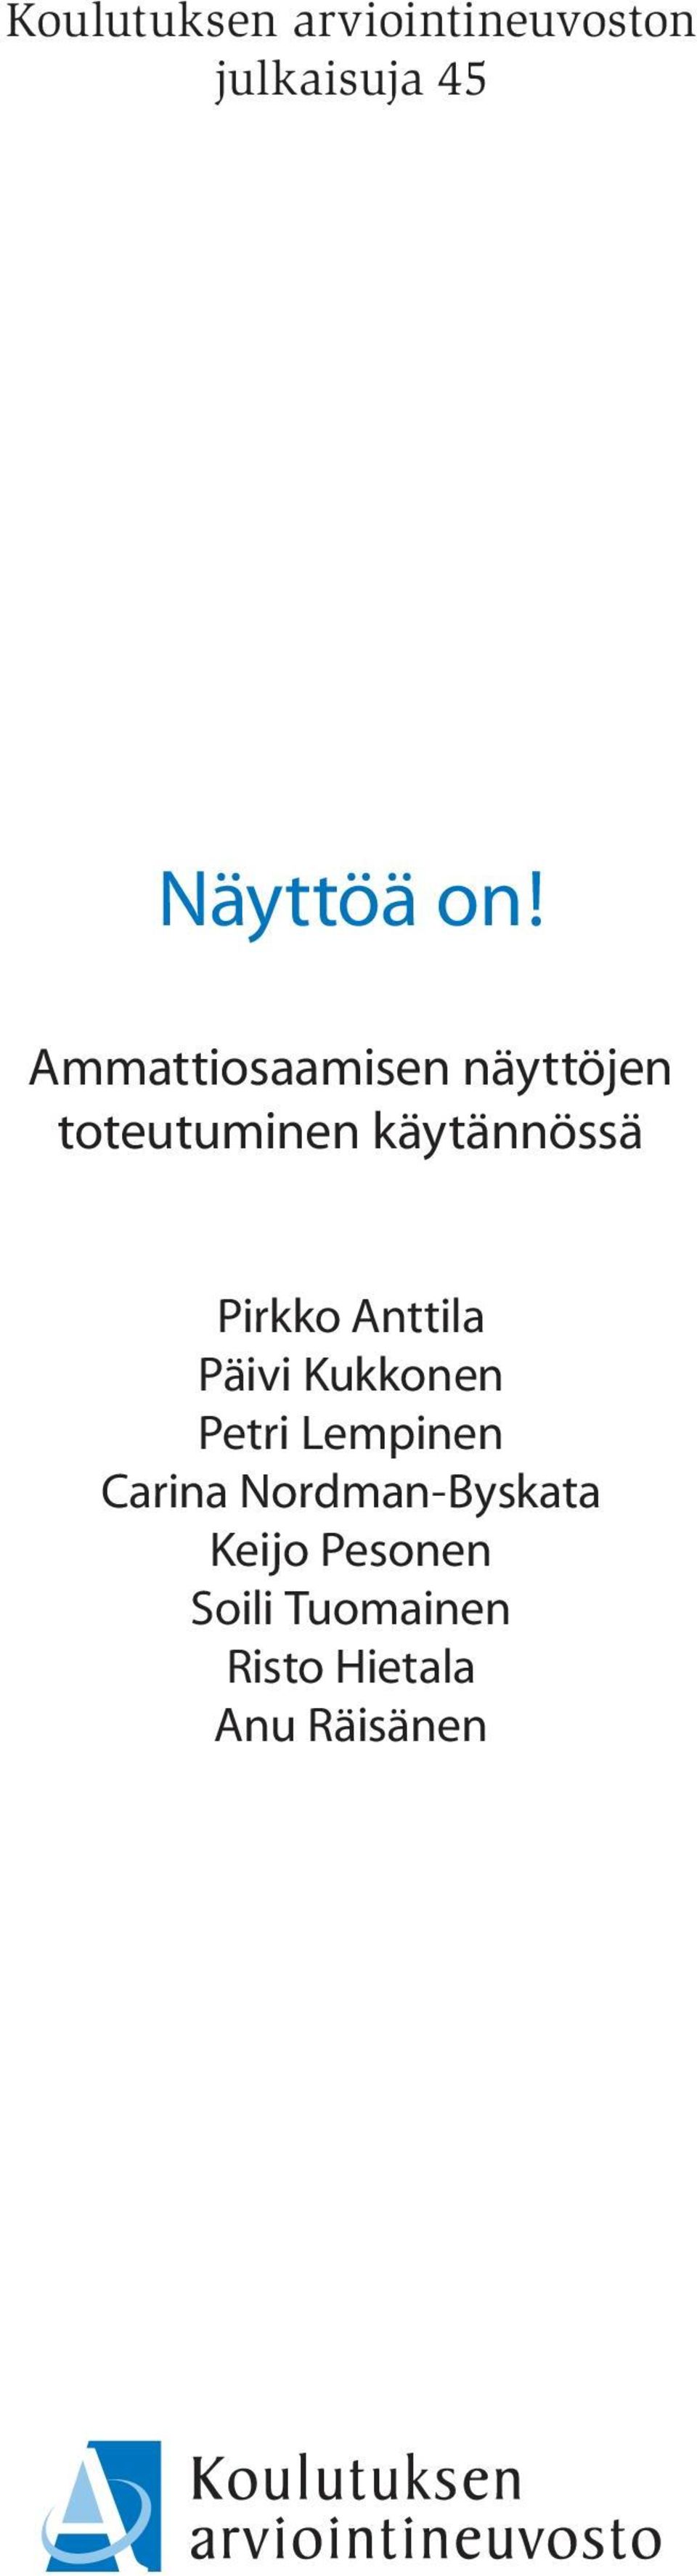 Pirkko Anttila Päivi Kukkonen Petri Lempinen Carina